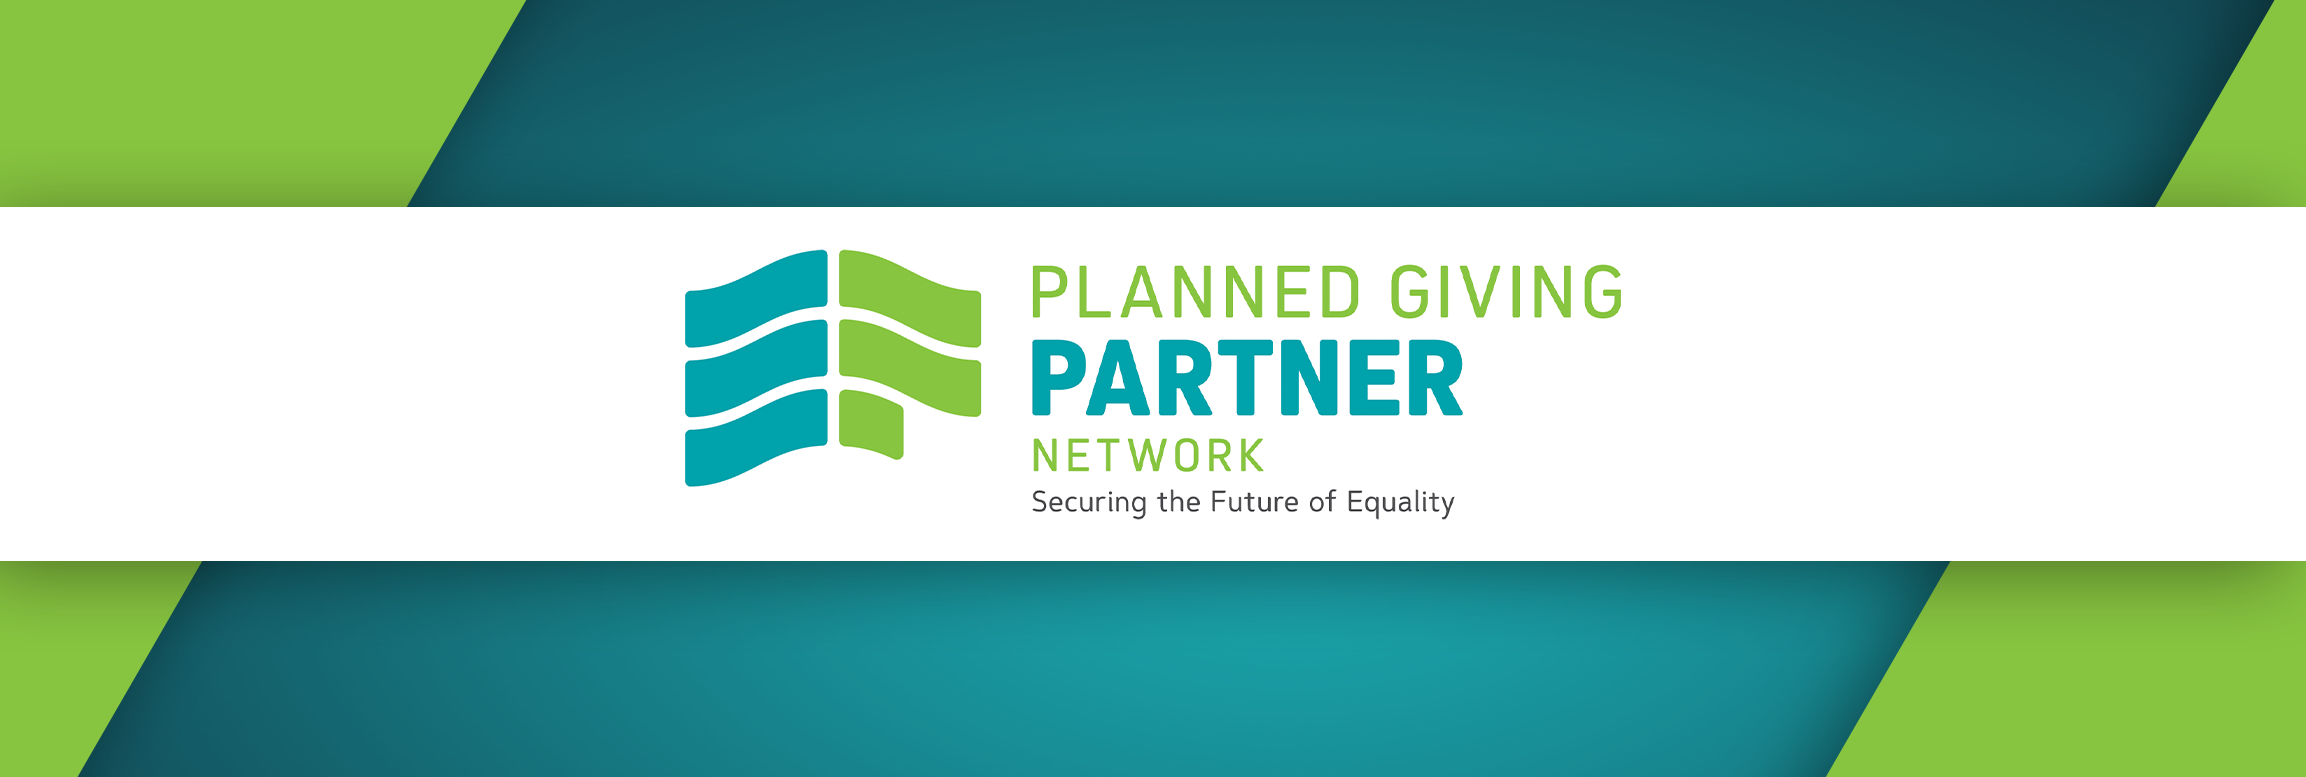 planned-partner-banner.png